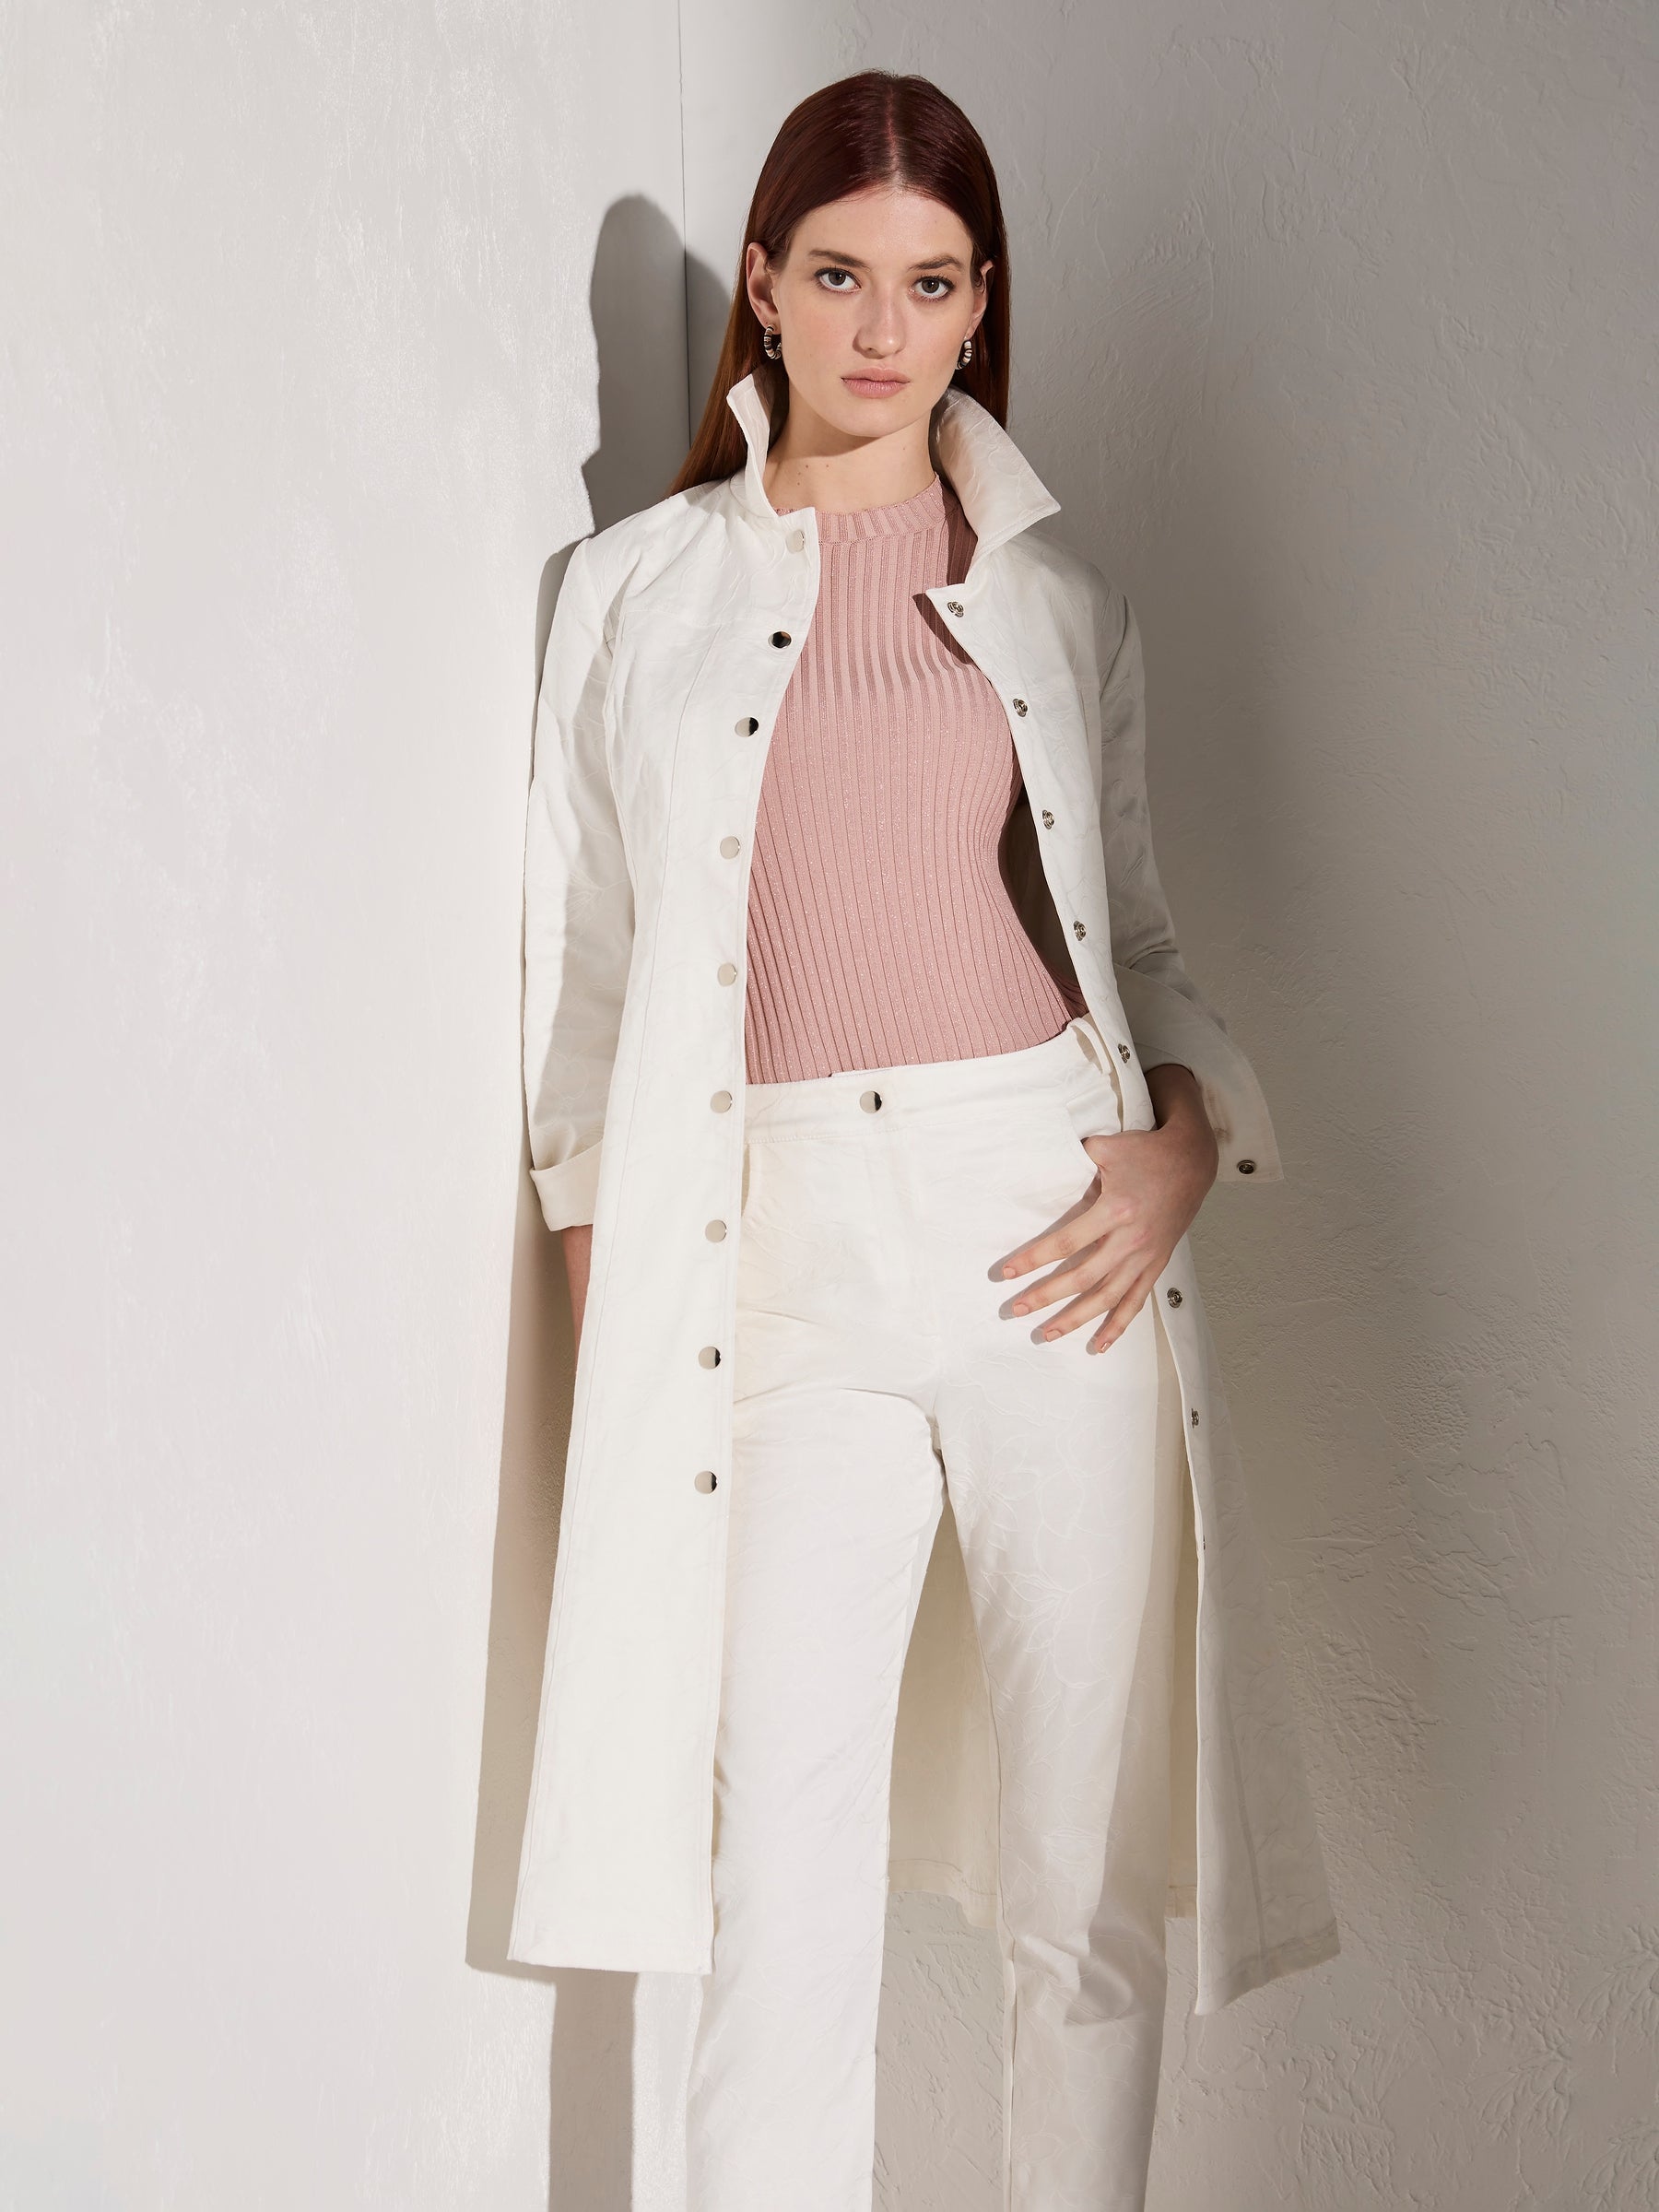 Leona Shirt Dress - Ivory White (Size 8 + 10 Only)